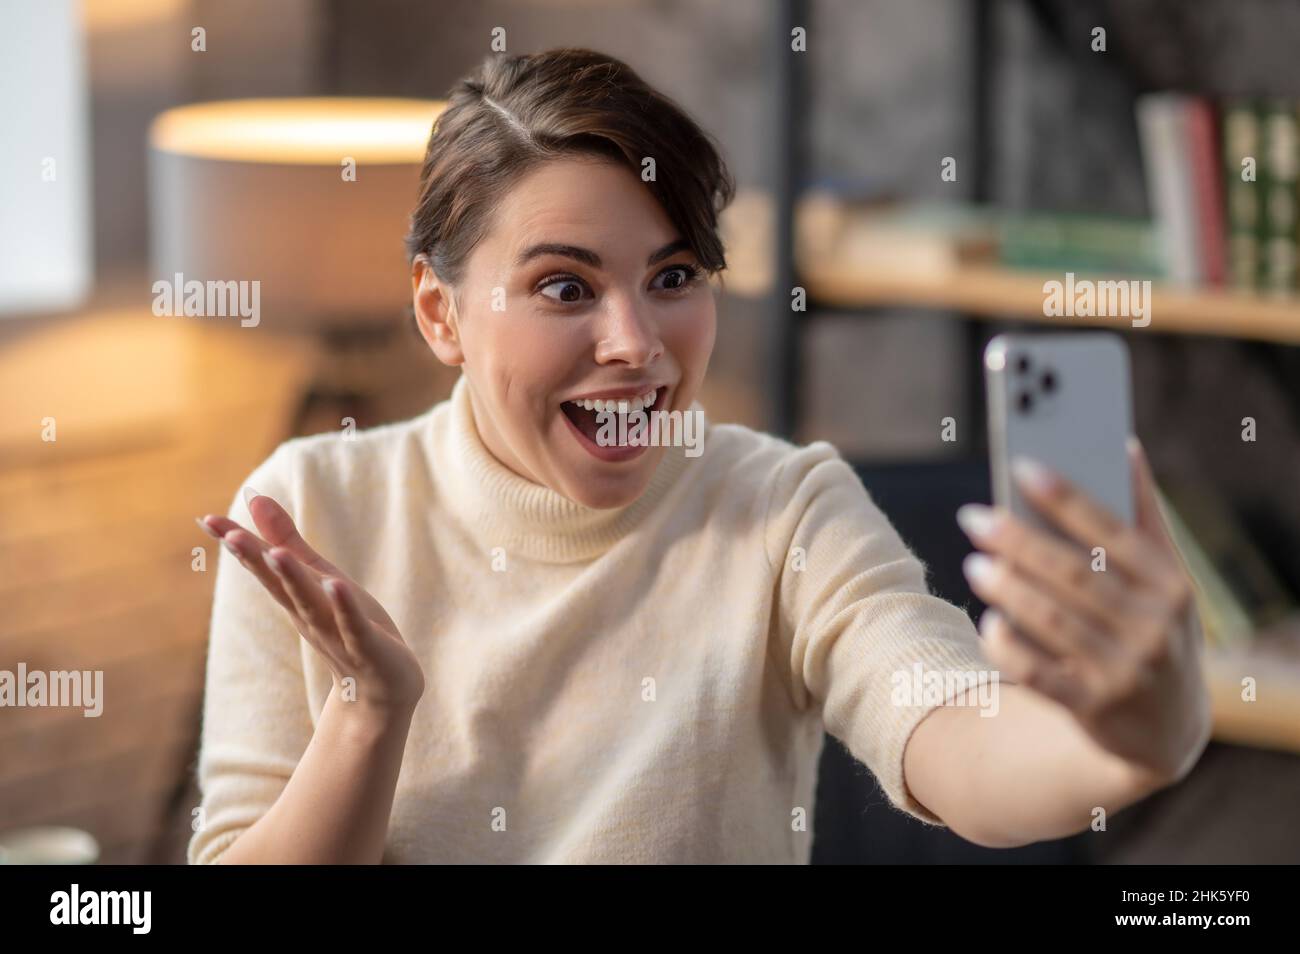 Mit offenem Mund gestikulierende Frau, die auf ihr Mobiltelefon schaut Stockfoto